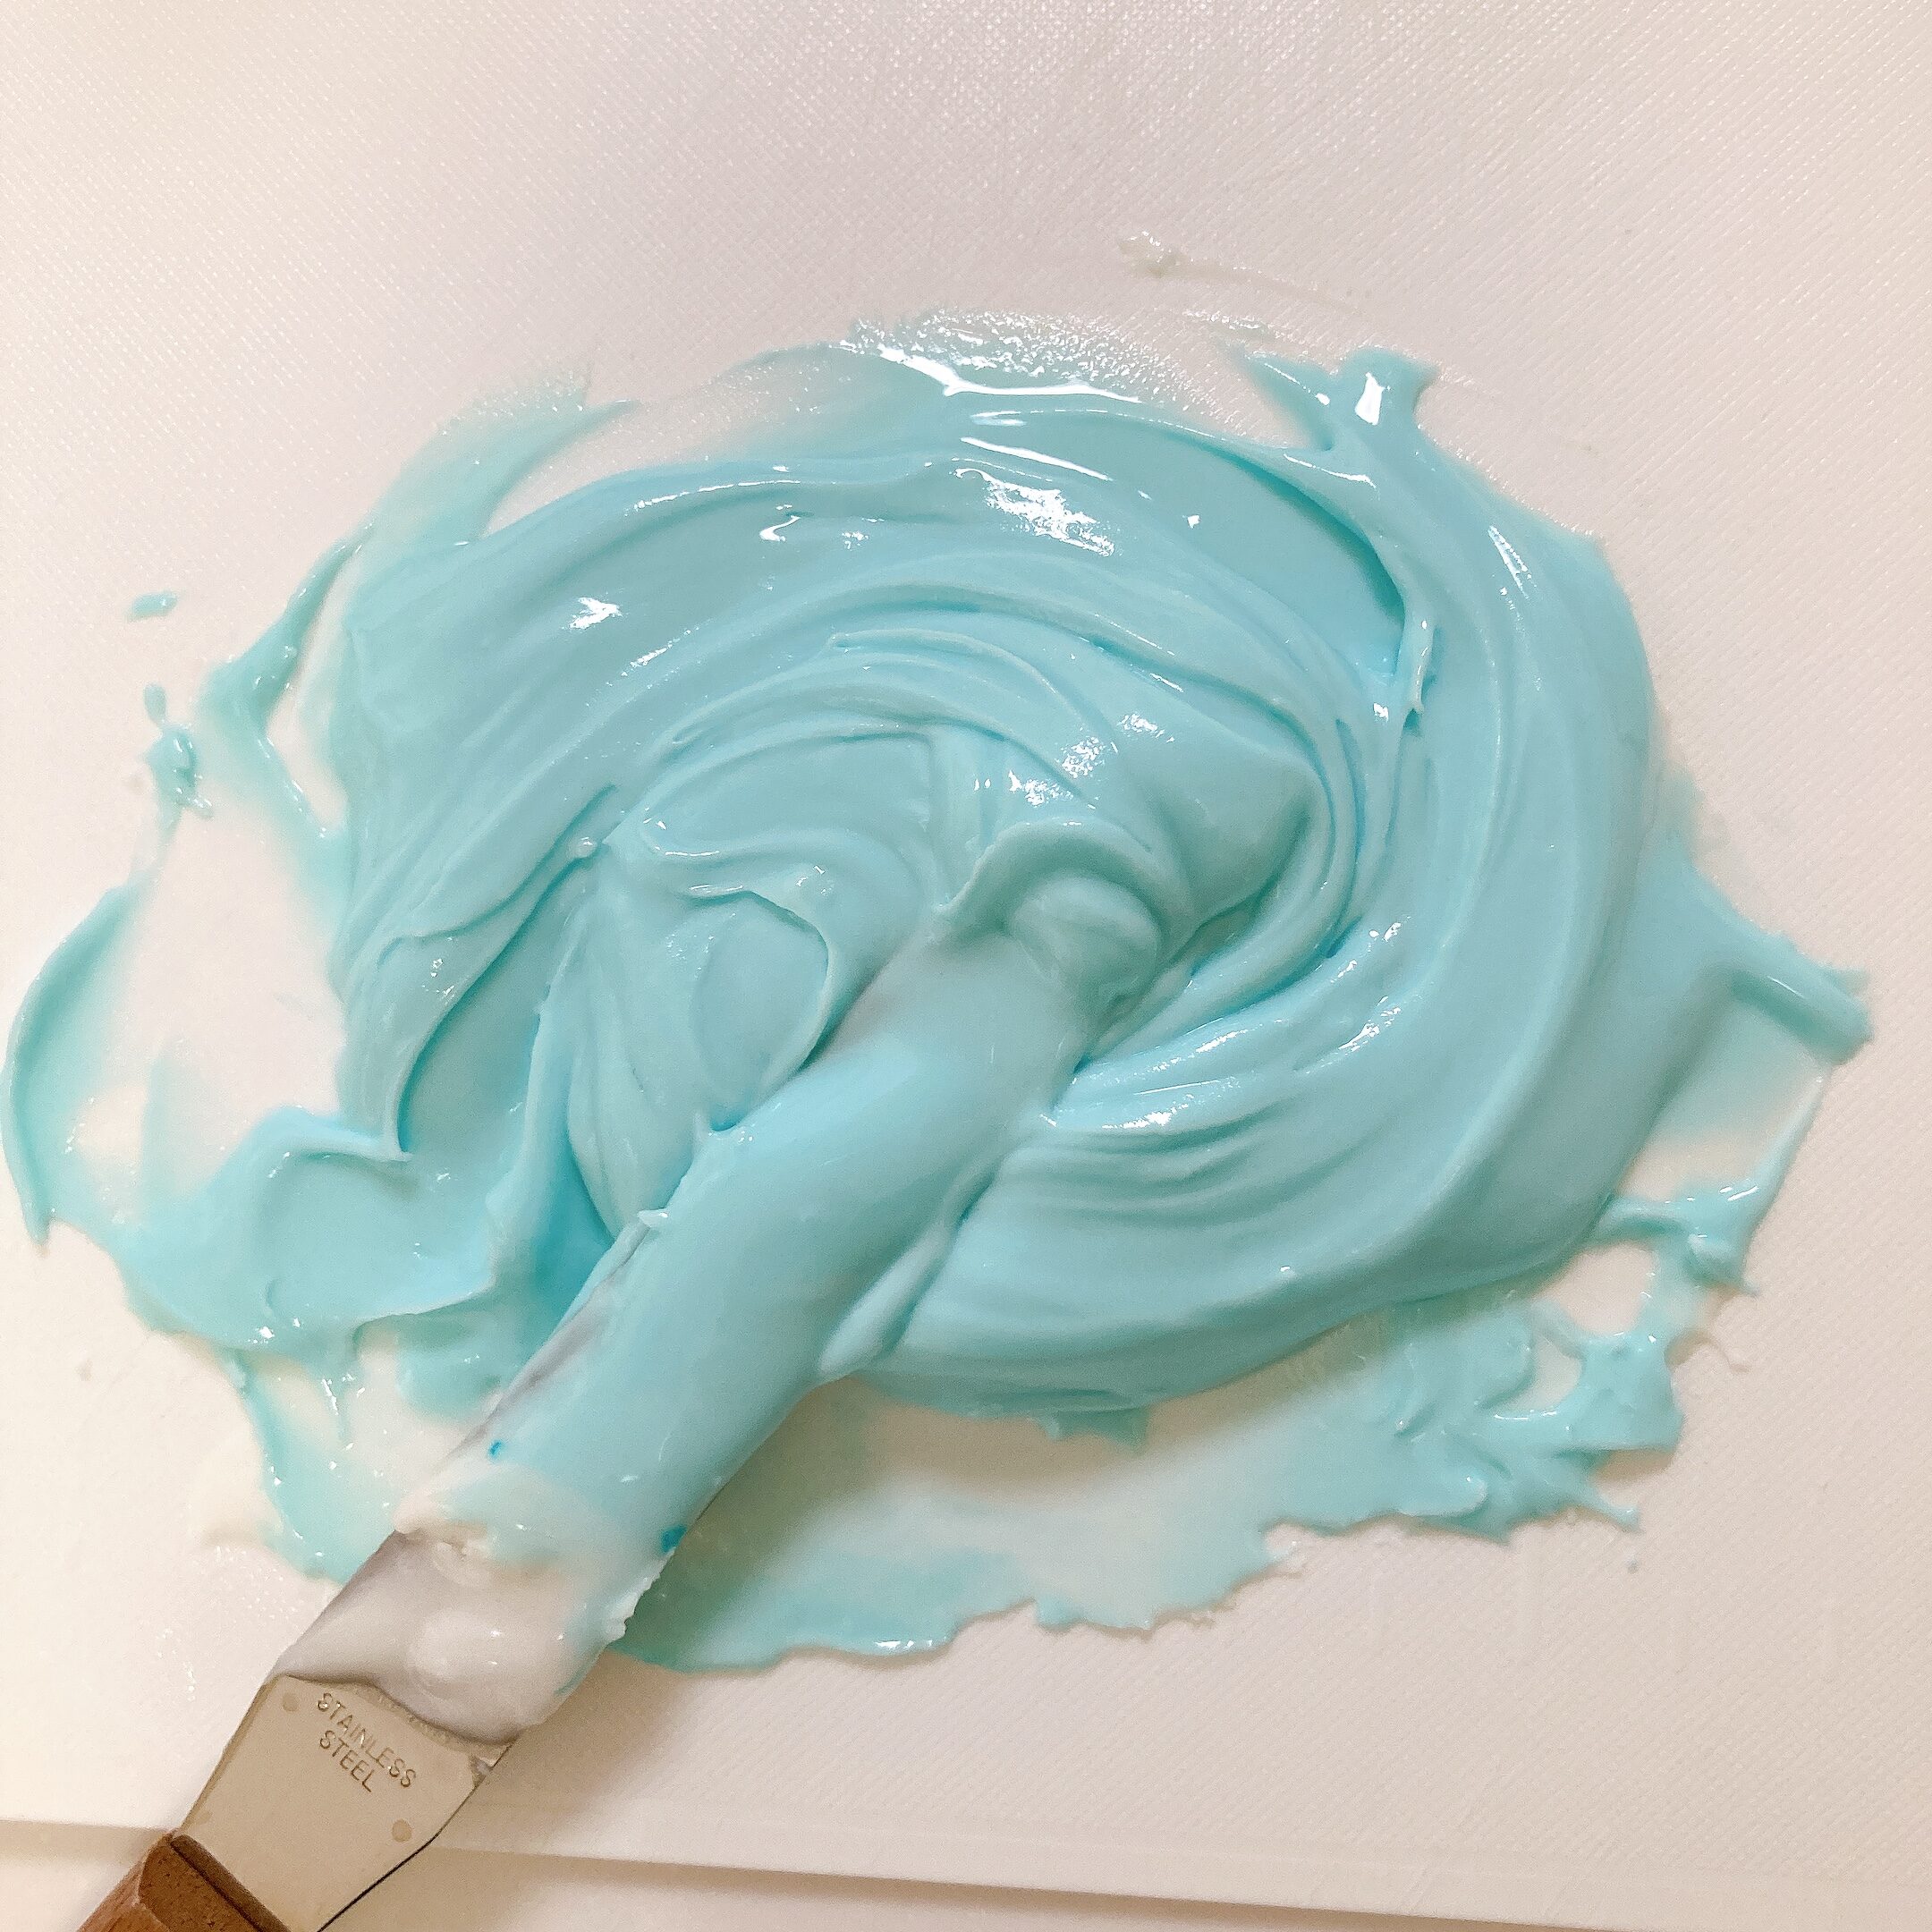 アイシングクリームに青い色をつけたようす